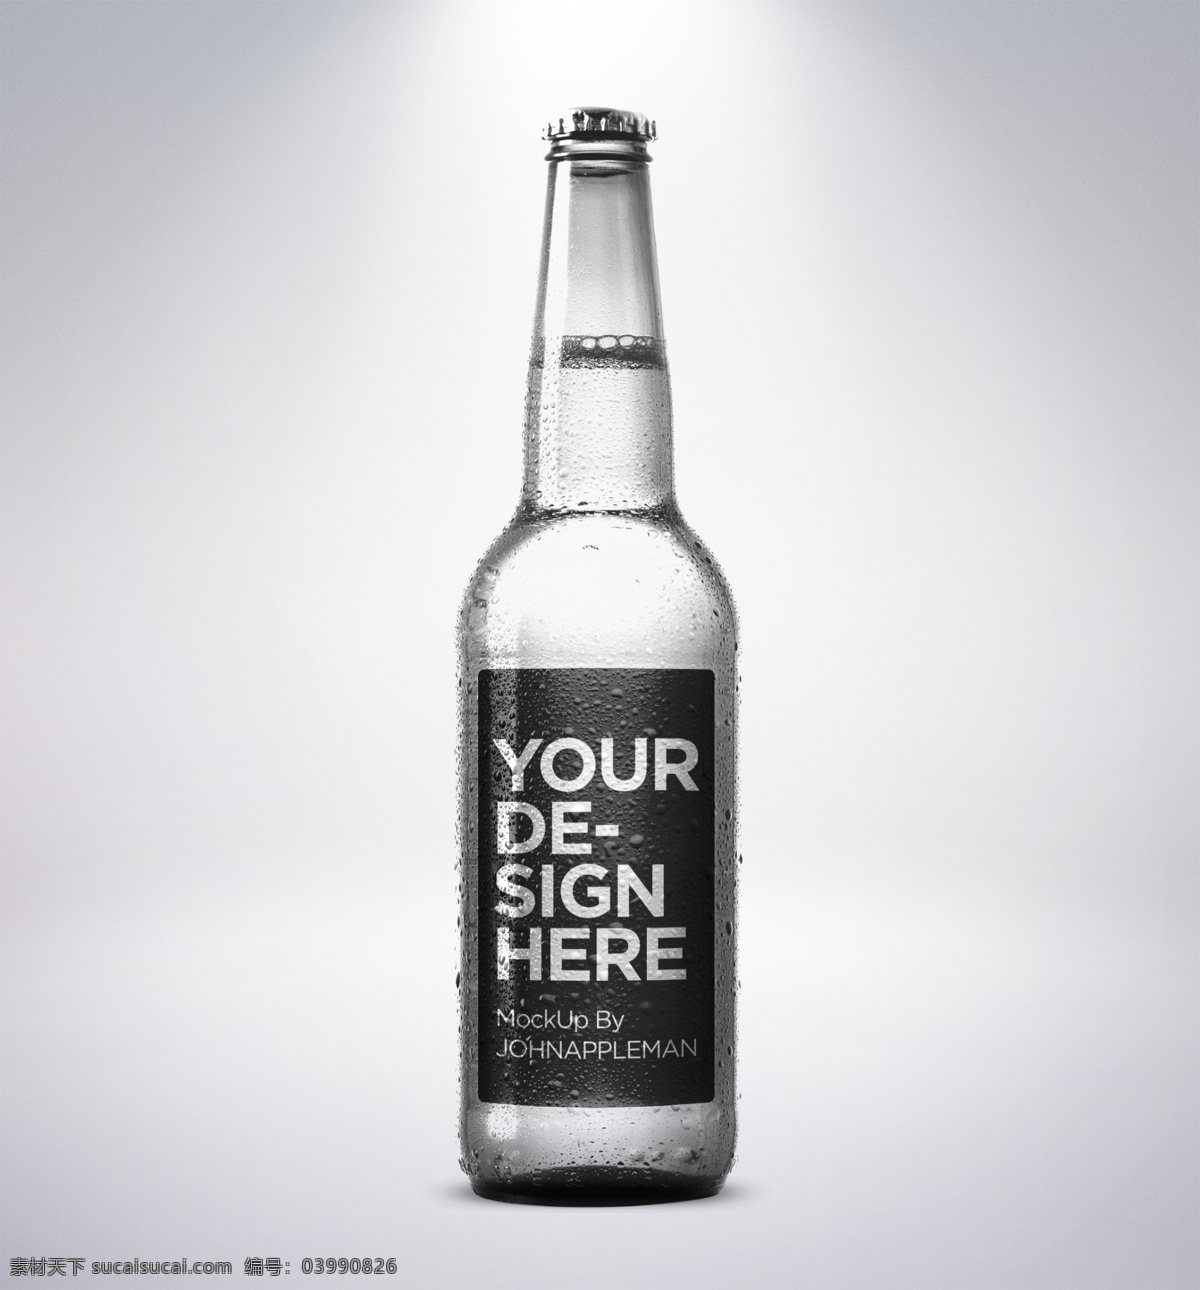 啤酒瓶样机 啤酒瓶 啤酒包装 酒瓶 啤酒 玻璃瓶 瓶子 器皿 容器 调料瓶 饮料瓶